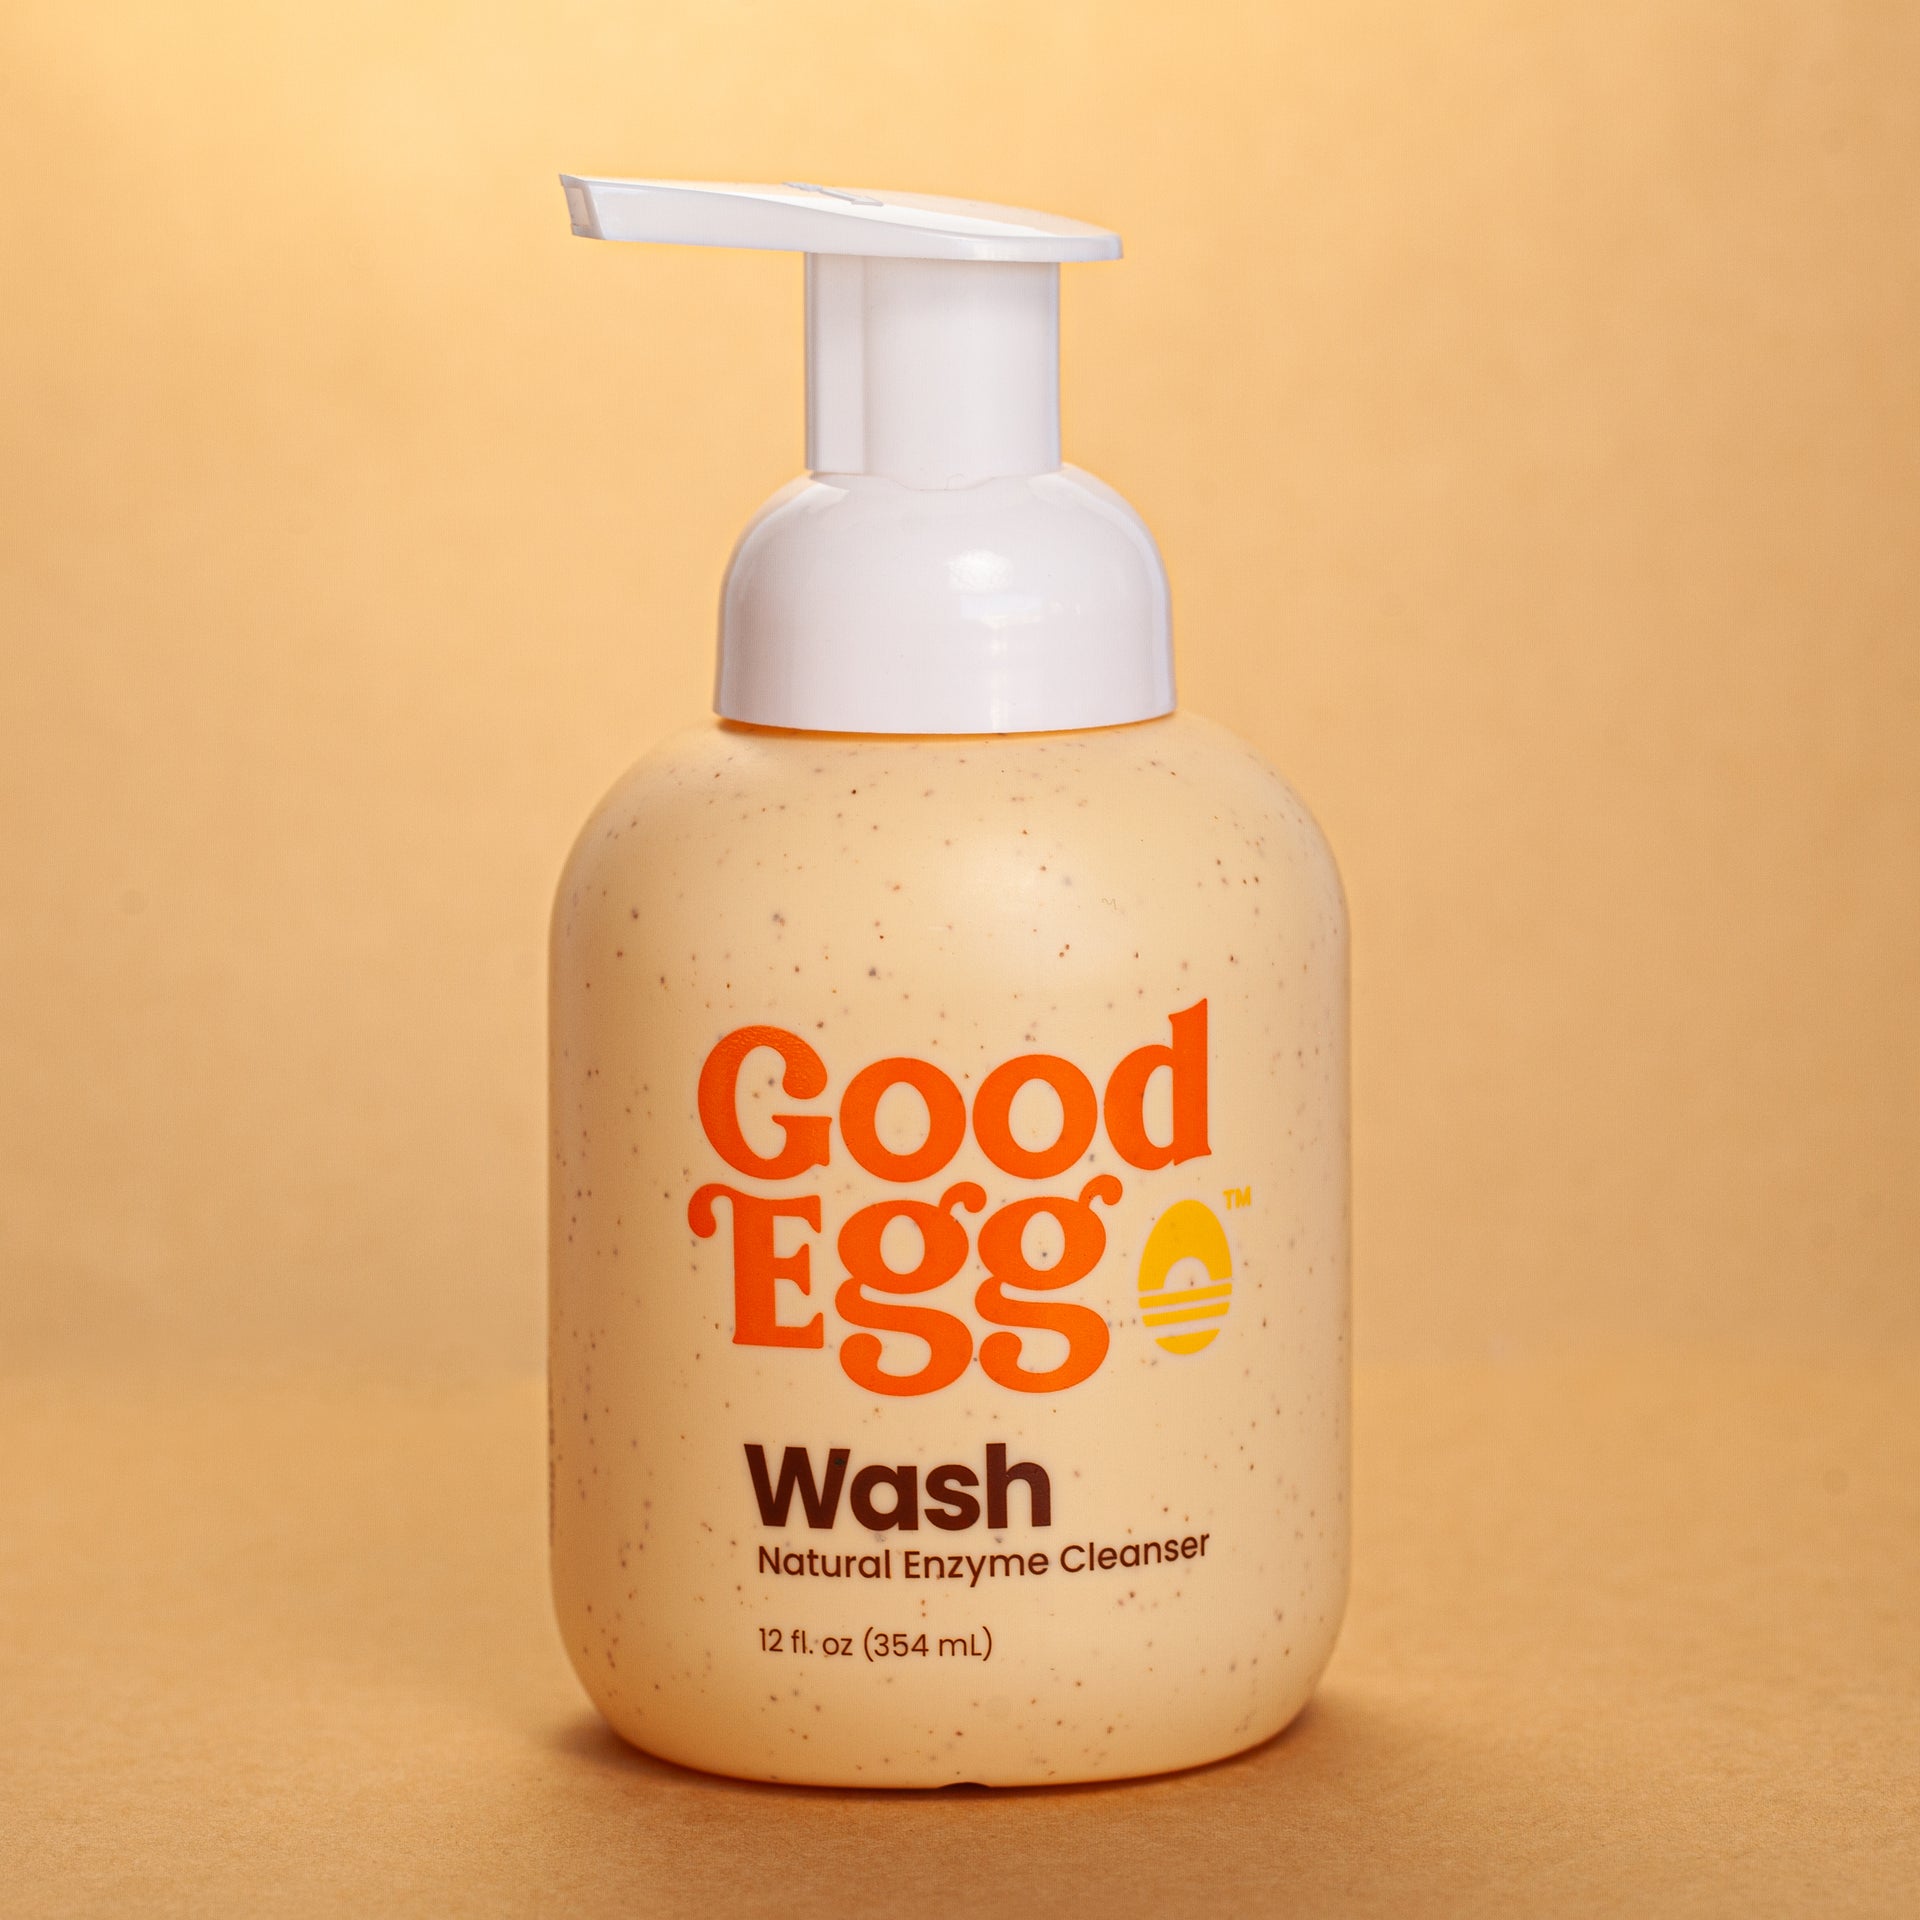 GoodEggStuff  The Original Egg Brush and Egg Cleaner to Clean Fresh E